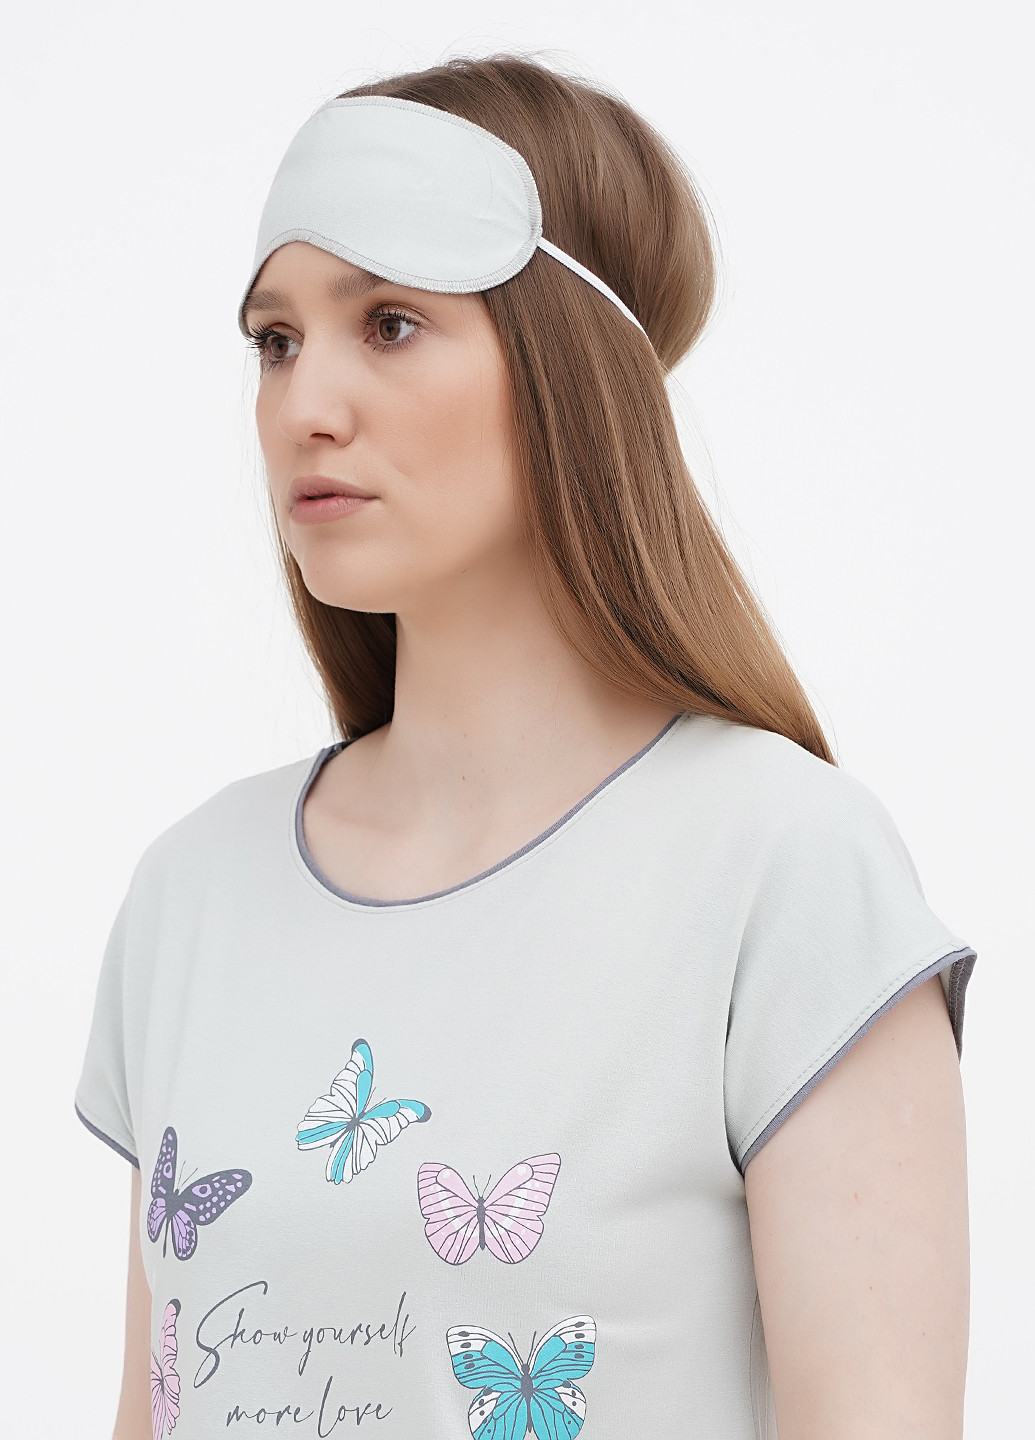 Оливковая всесезон пижама (футболка, бриджи, маска) футболка + бриджи Lucci